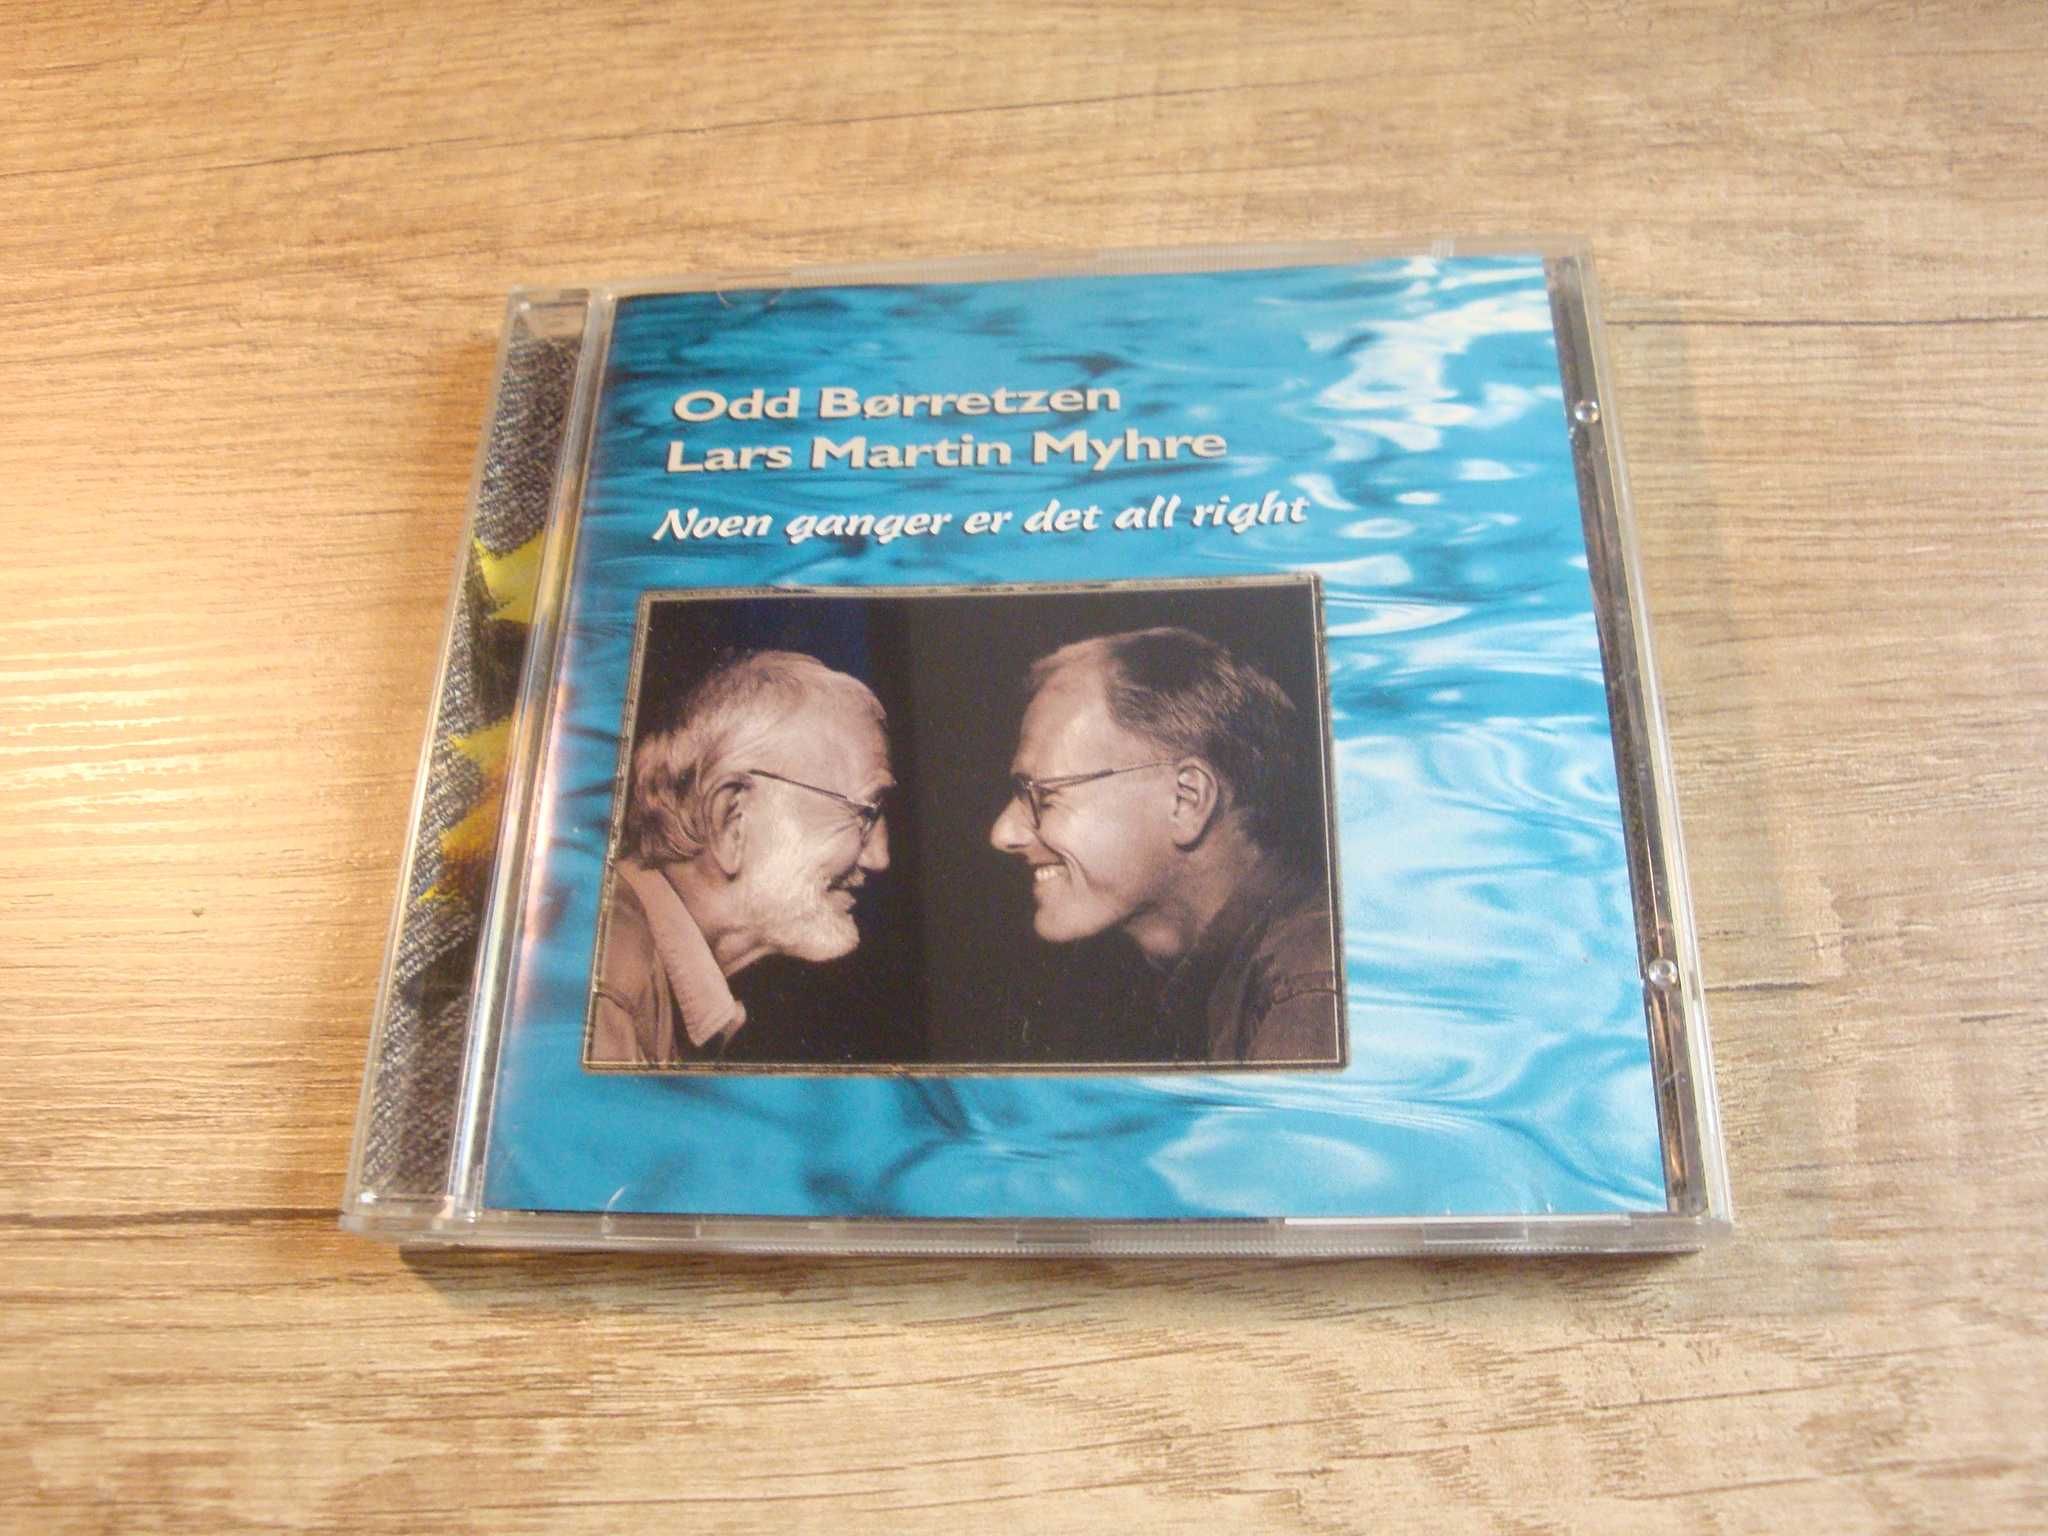 Odd Borretzen, Lars Martin Myhre - Noen Ganger (Jazz)